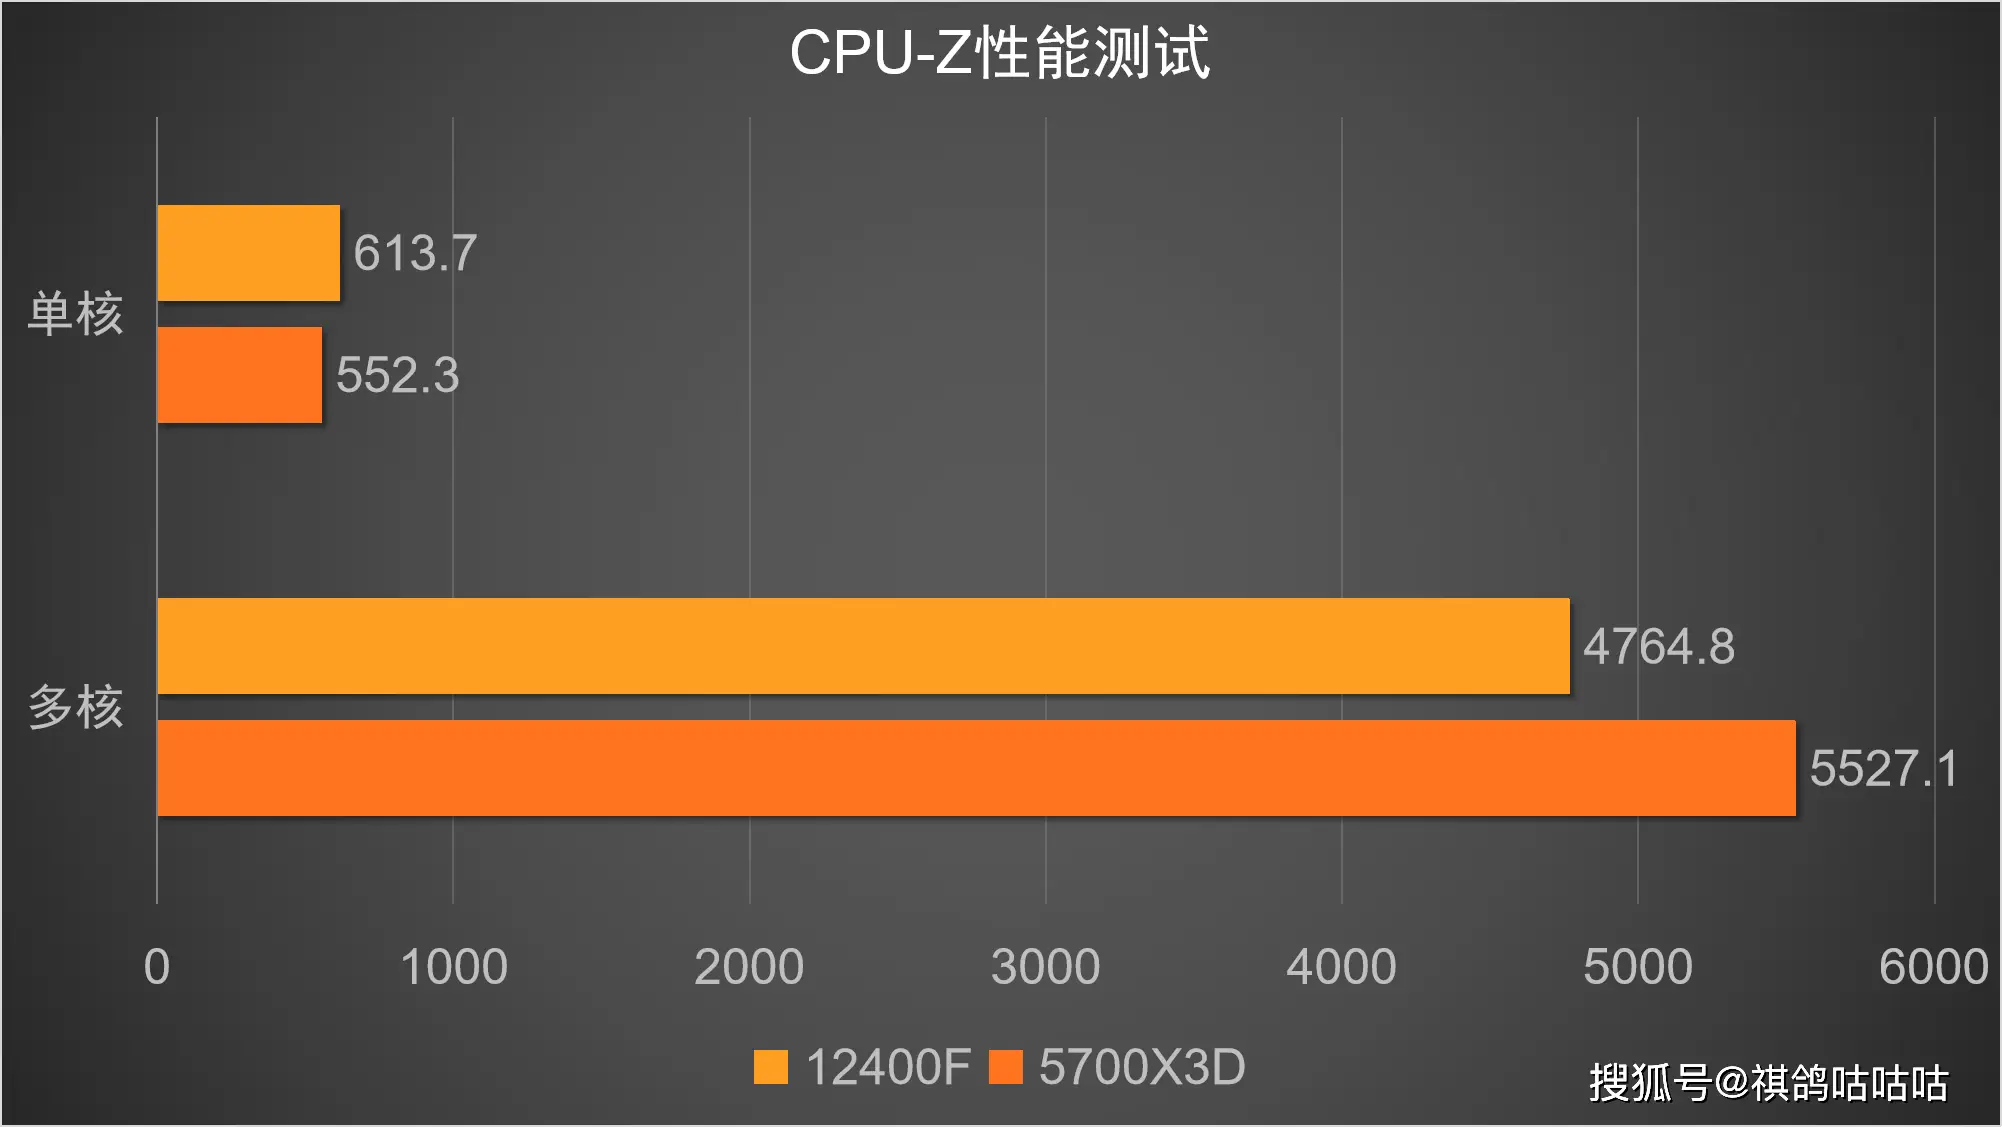 二手 DDR4 8G 内存条：昔日辉煌今犹在，性价比之选等你来  第2张